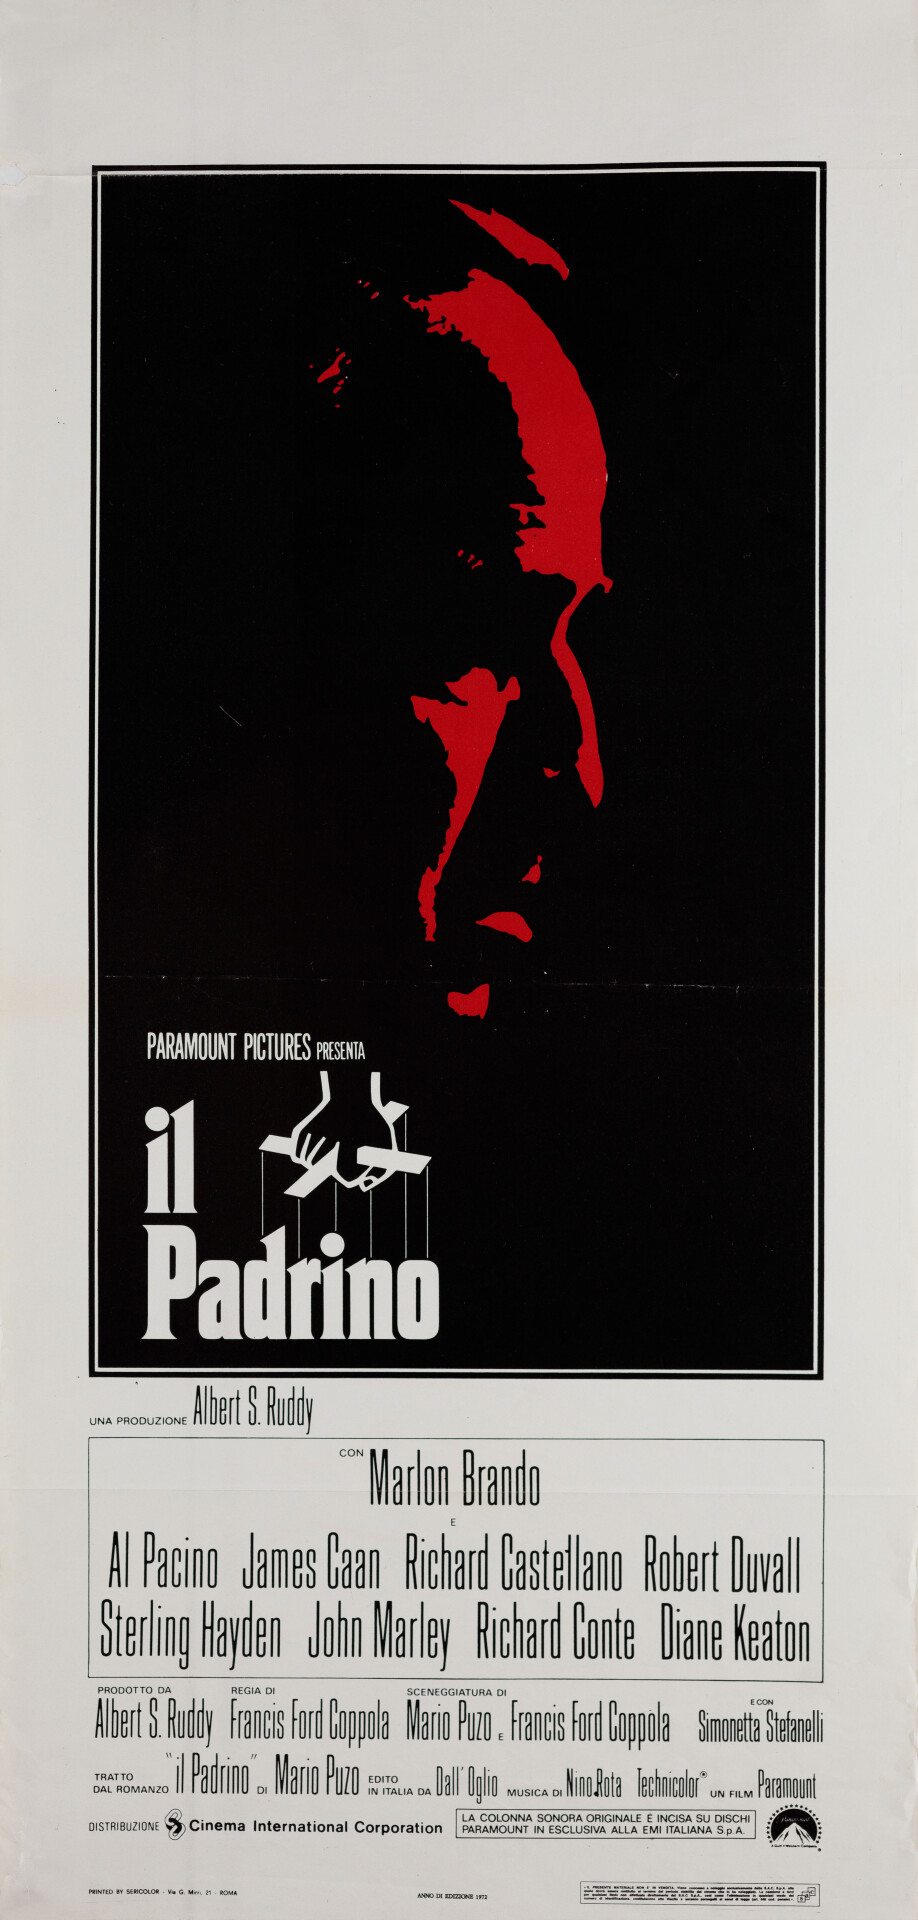 Крестный отец (The Godfather, 1972), режиссёр Фрэнсис Форд Коппола, итальянский постер к фильму (графический дизайн, 1970 год)